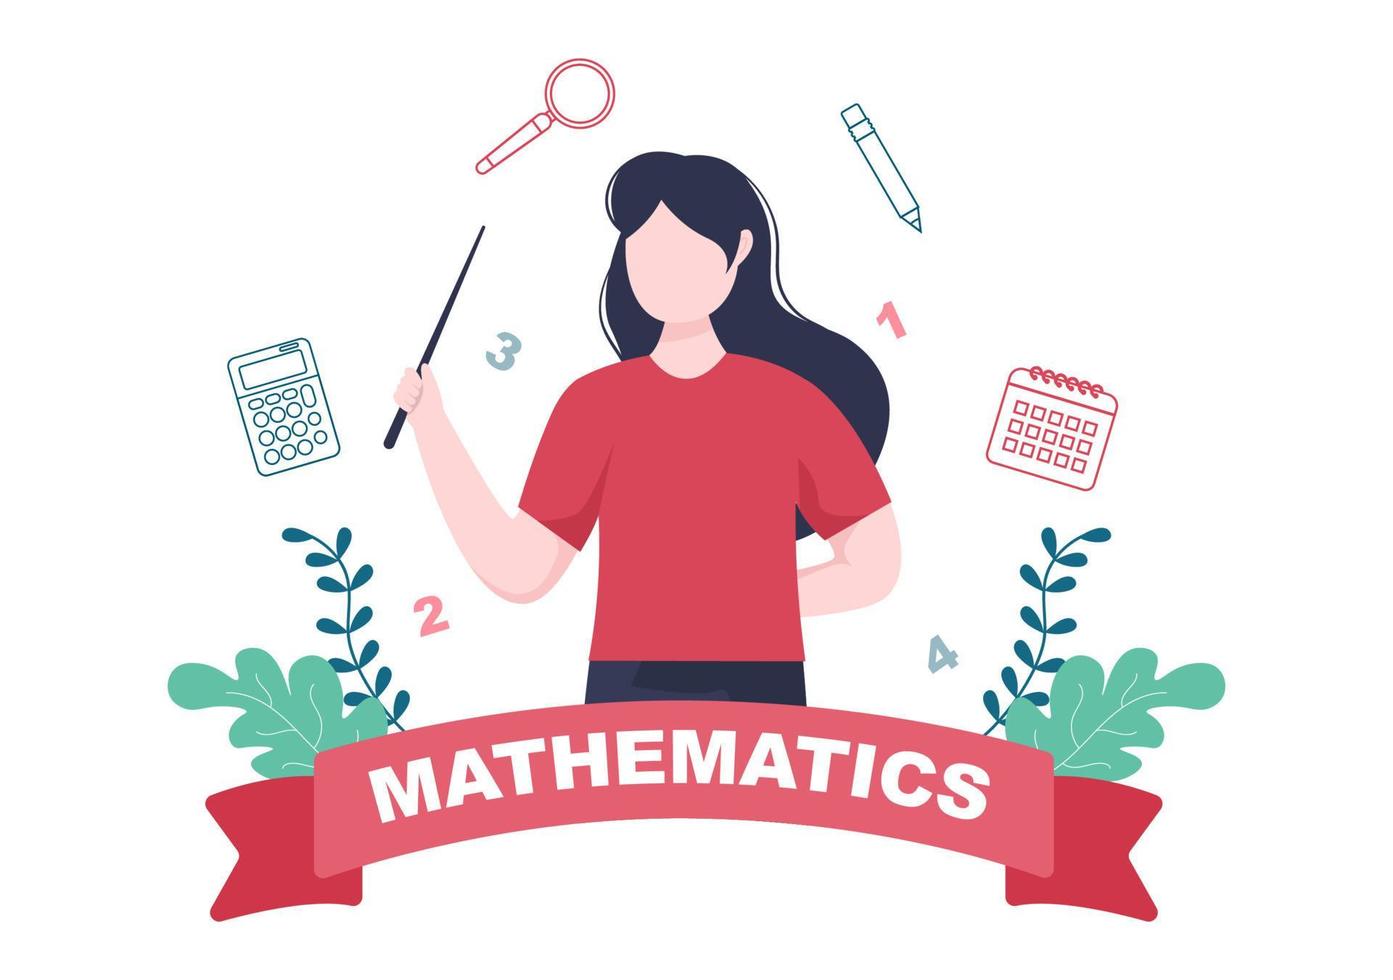 Lernen Mathematik der Bildung und Wissen Hintergrund Cartoon-Vektor-Illustration. Wissenschaft, Technologie, Ingenieurwesen, Formel oder grundlegende Mathematik vektor